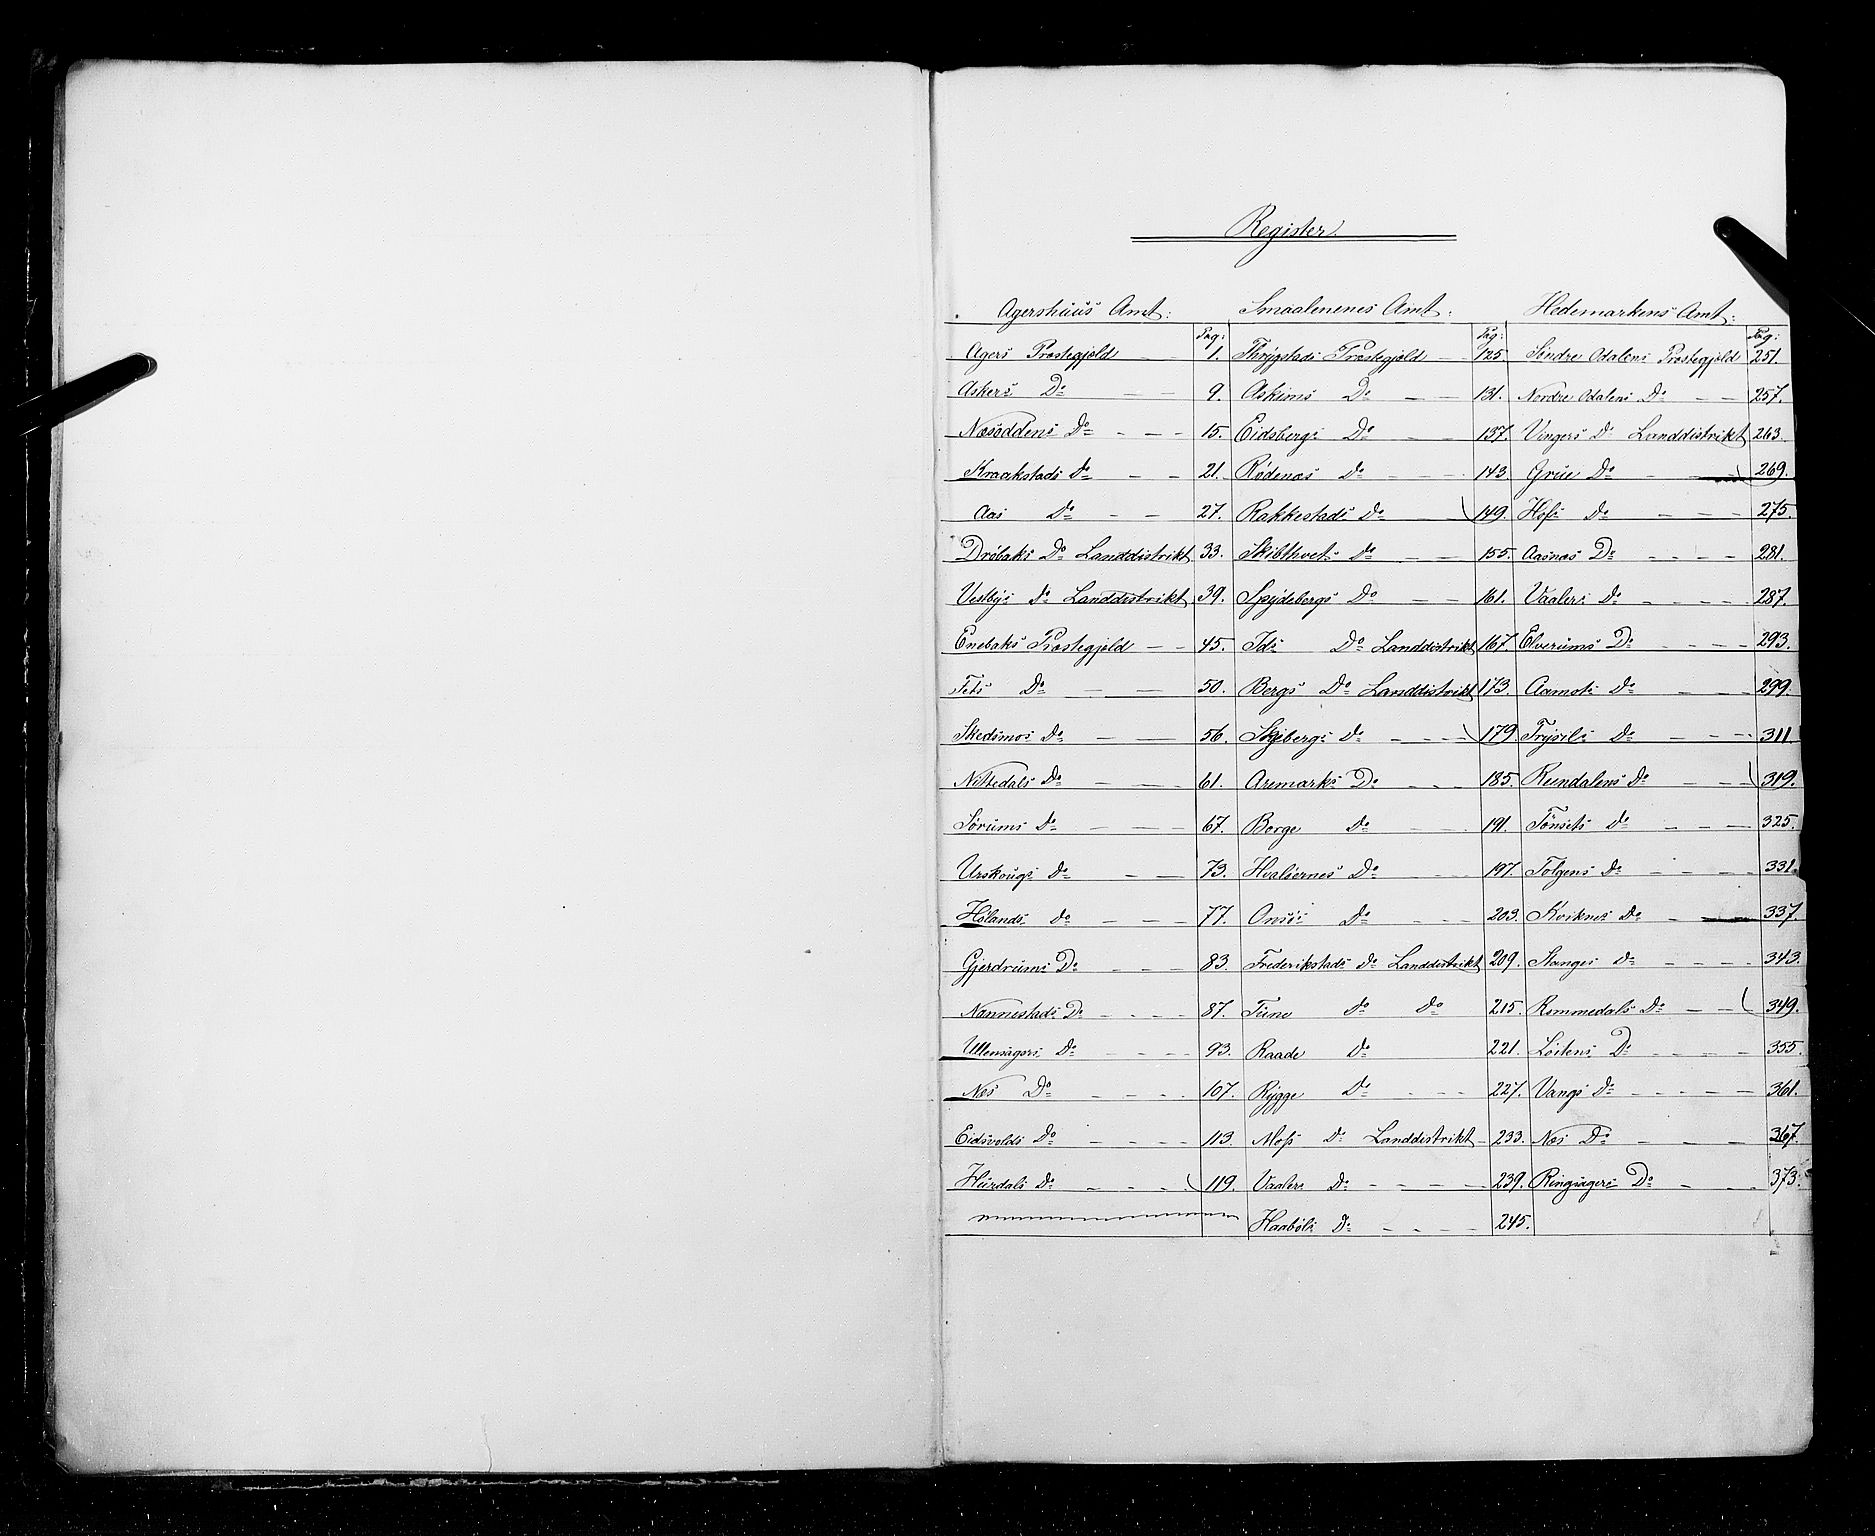 RA, Census 1855, vol. 1: Akershus amt, Smålenenes amt og Hedemarken amt, 1855